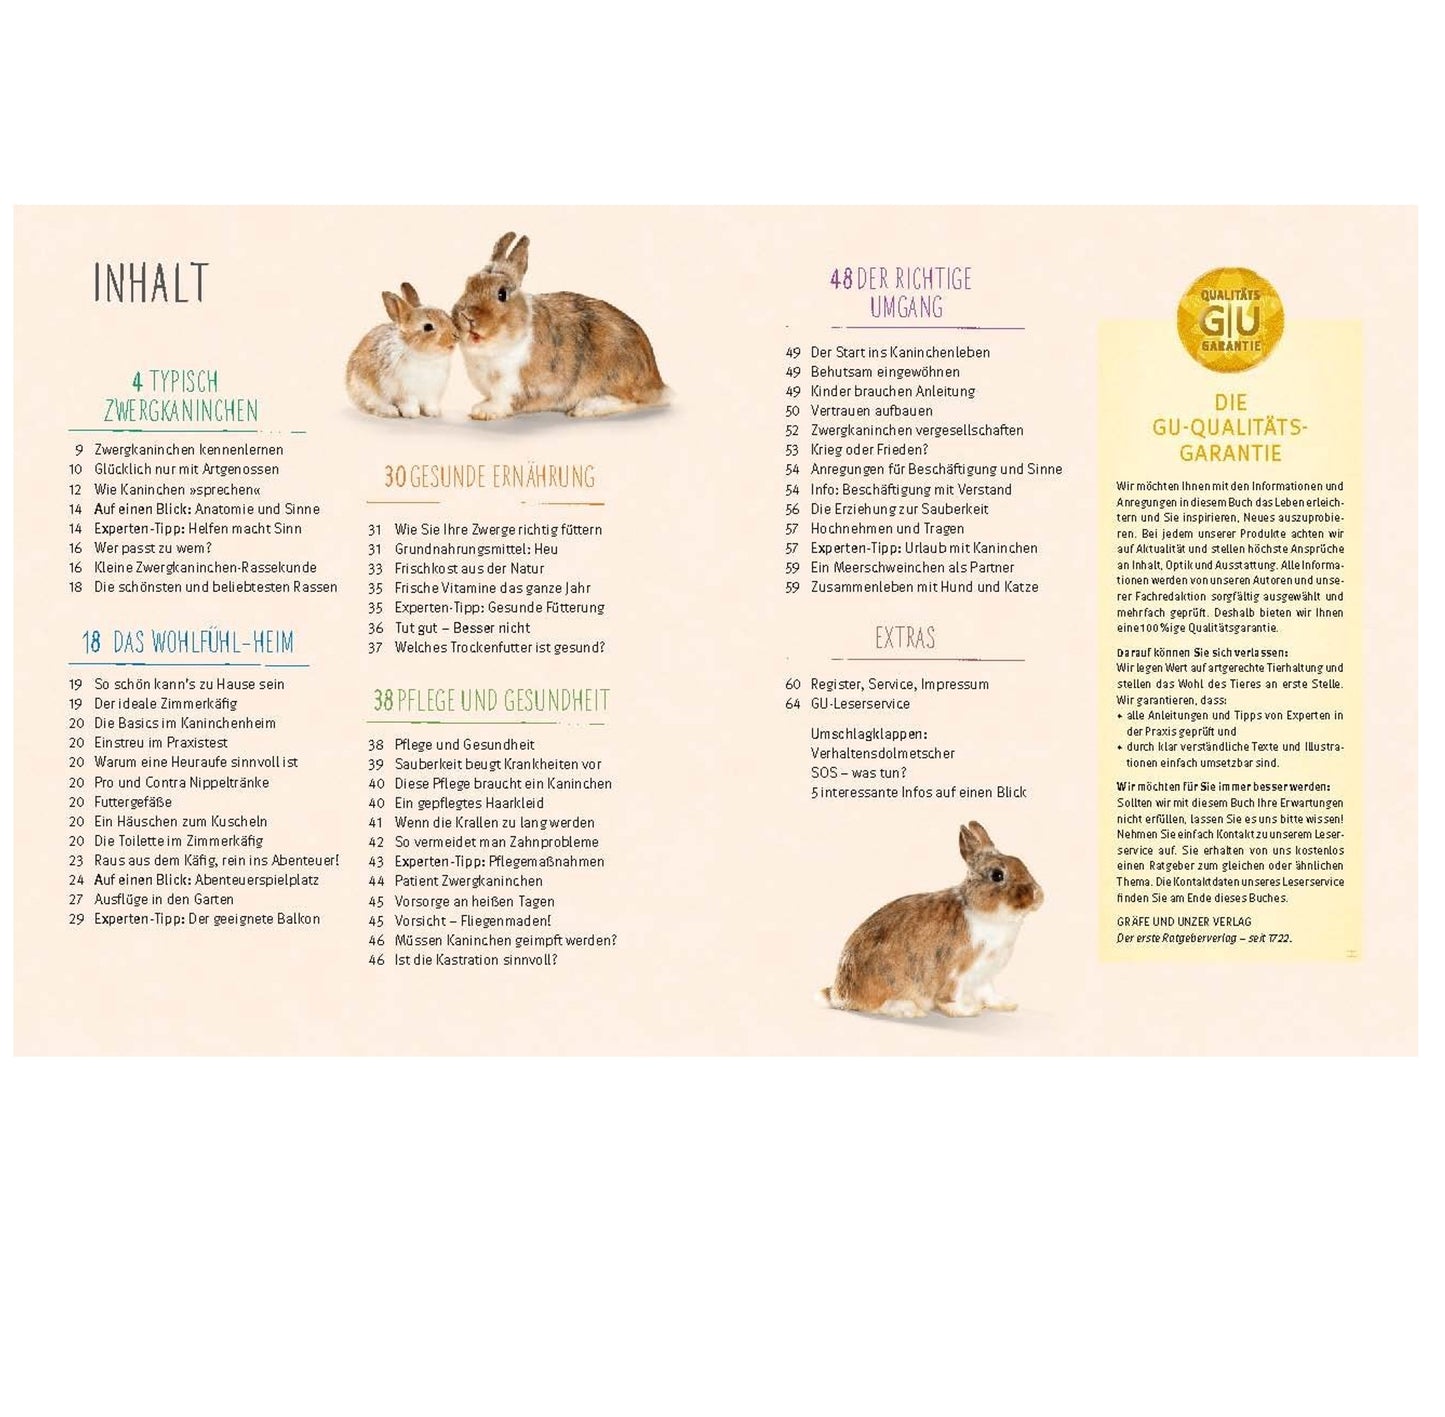 Happy Rabbit by Diana Bachmann